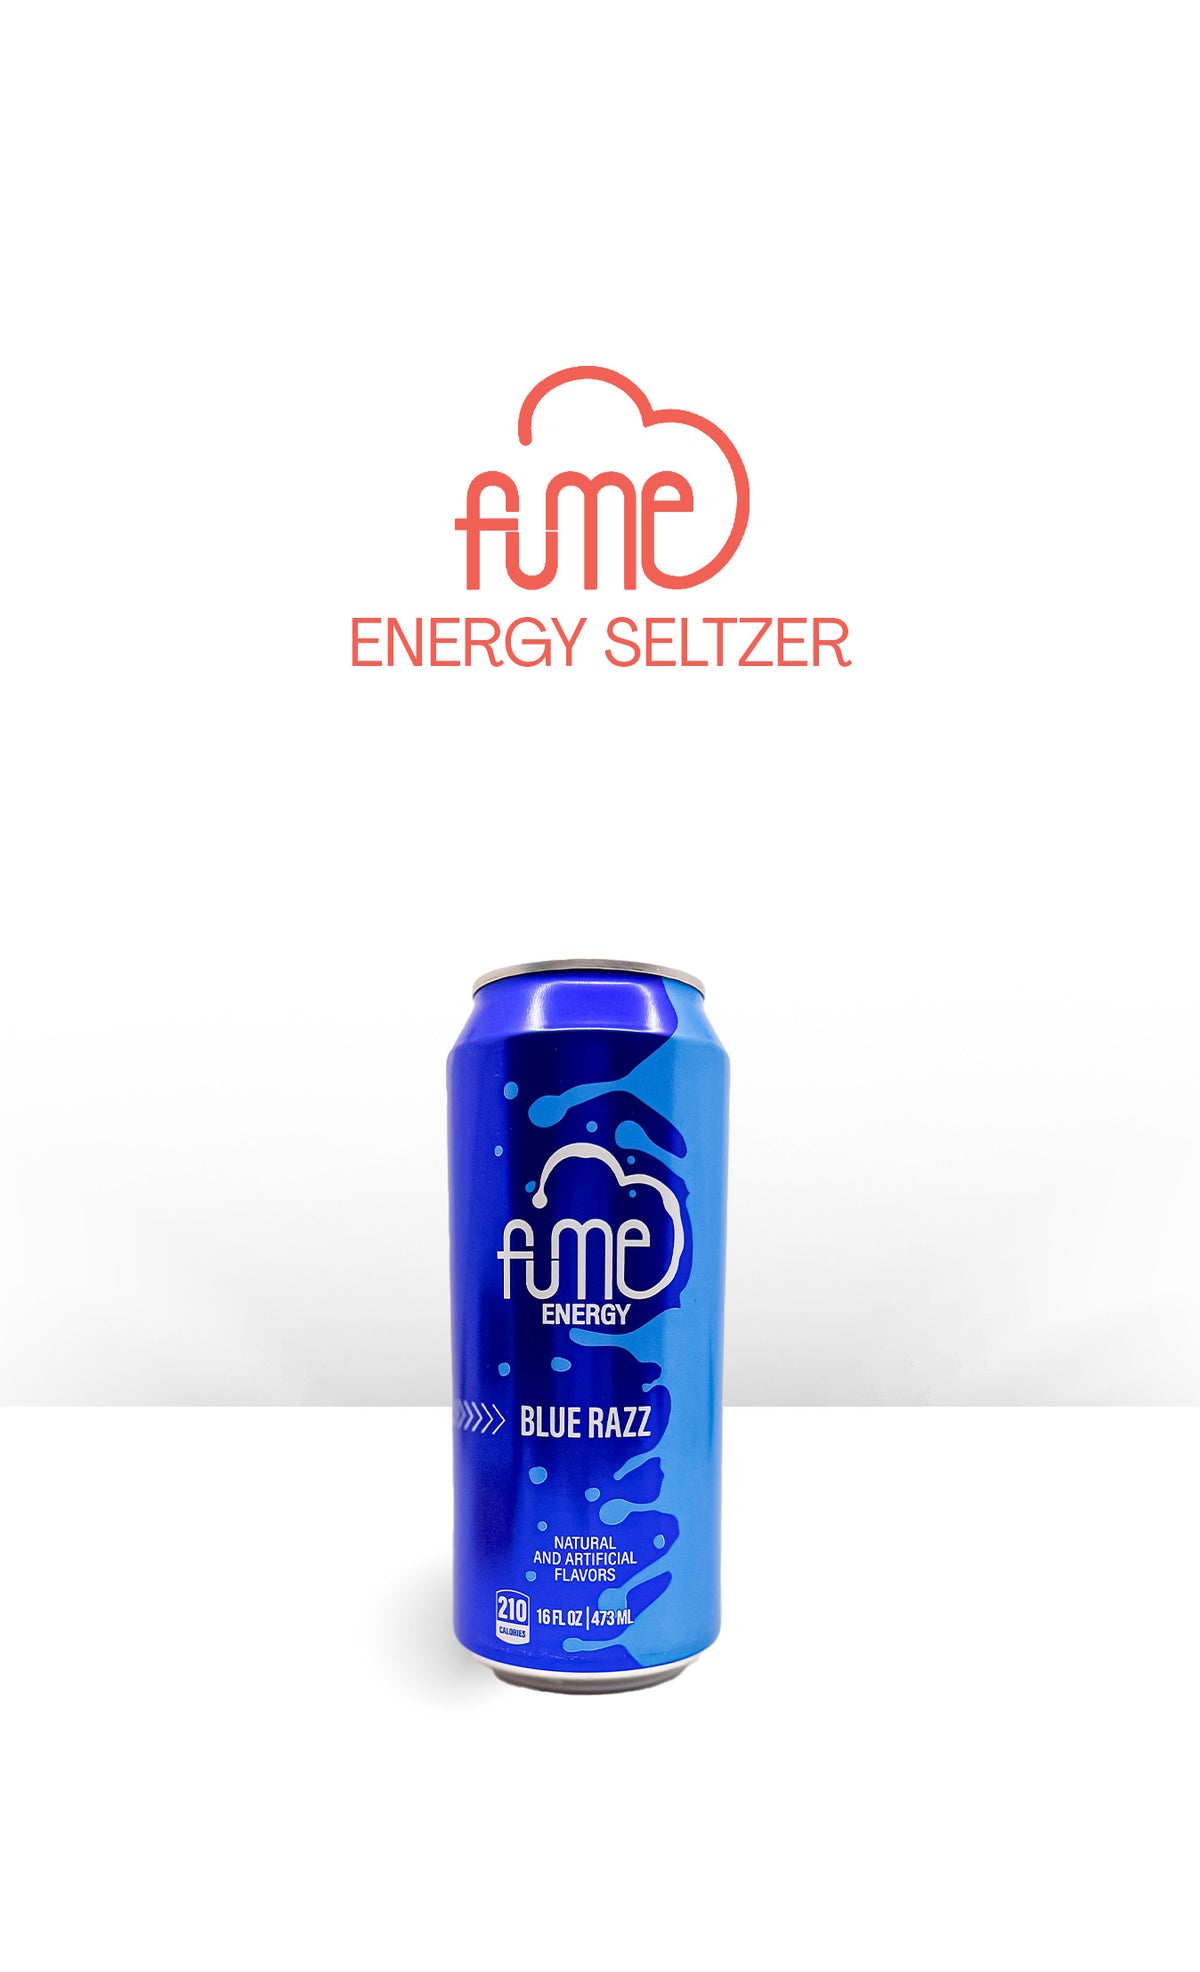 Fume Energy Seltzer